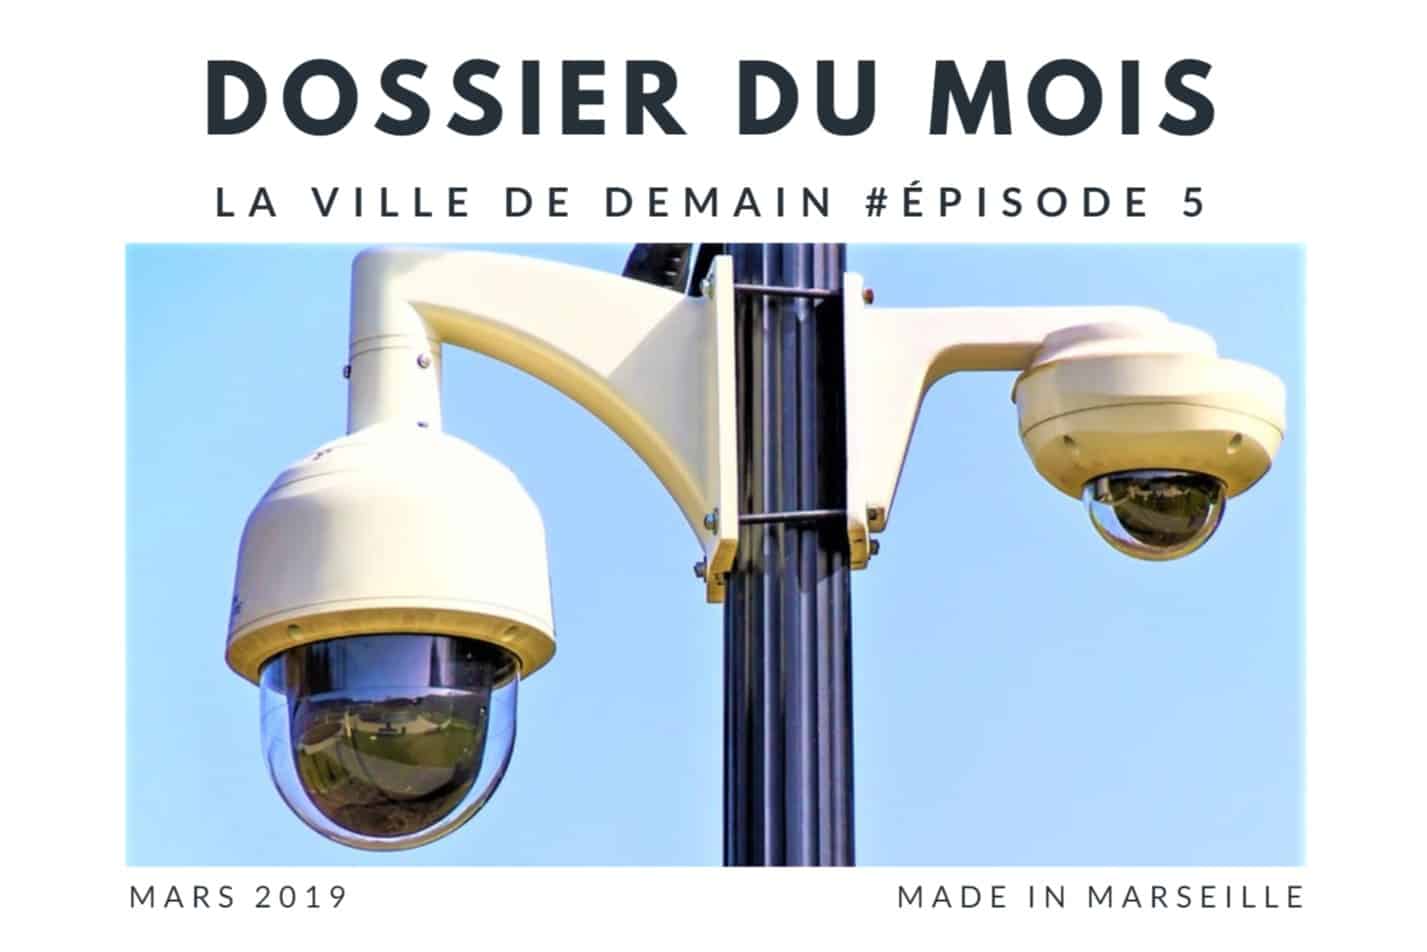 , Big data et sécurité : prévention efficace ou risque pour les libertés ?, Made in Marseille